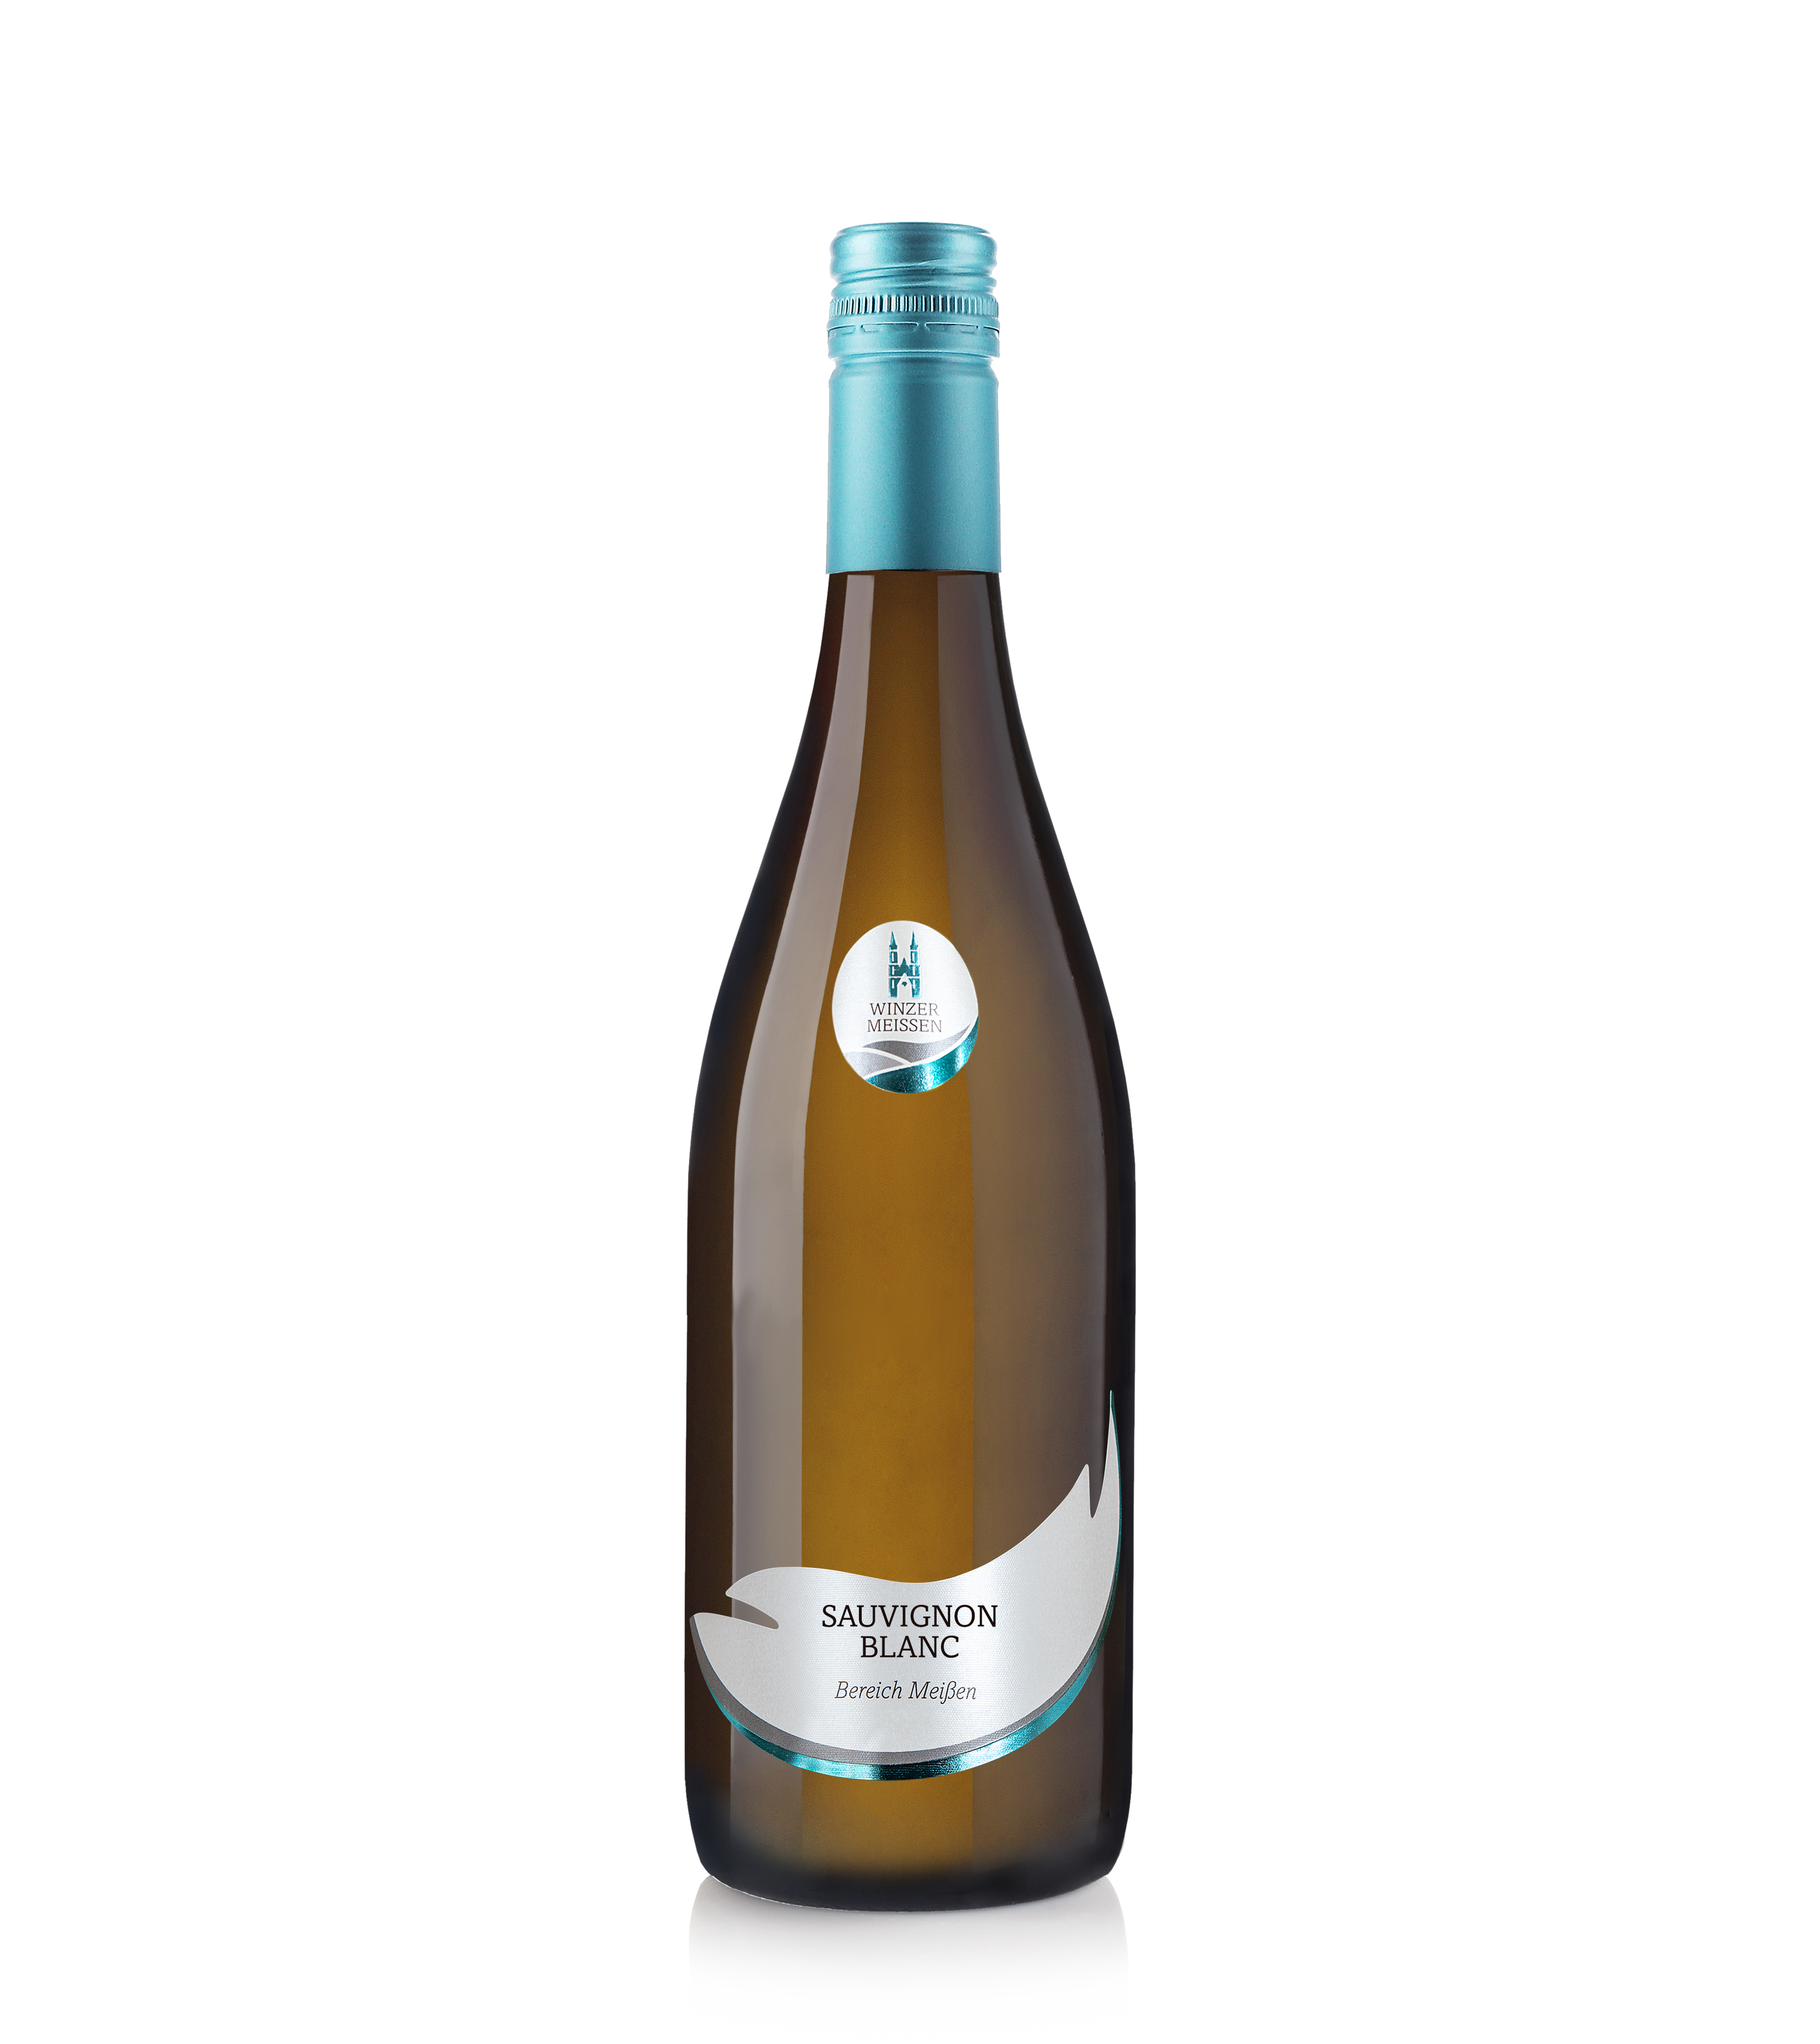 2021 Sauvignon Blanc Qualitätswein Bereich Meißen o.G.